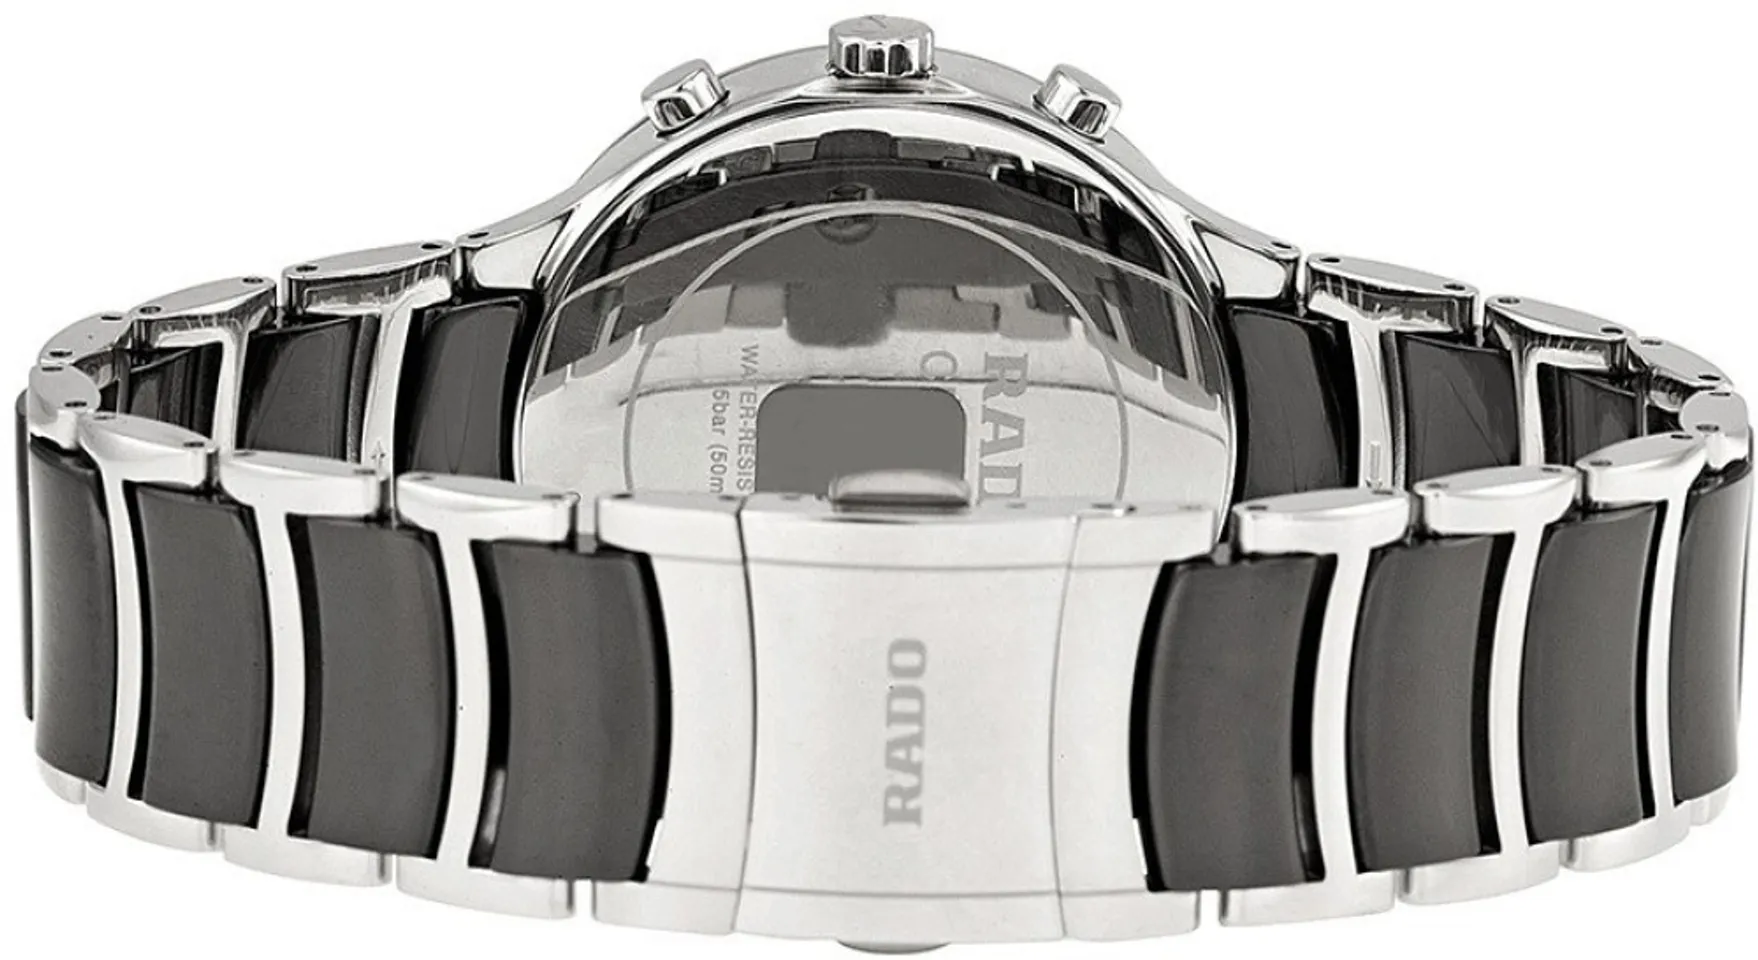 Đồng hồ Rado nam R30130152 được thiết kế khóa bướm chắc chắn